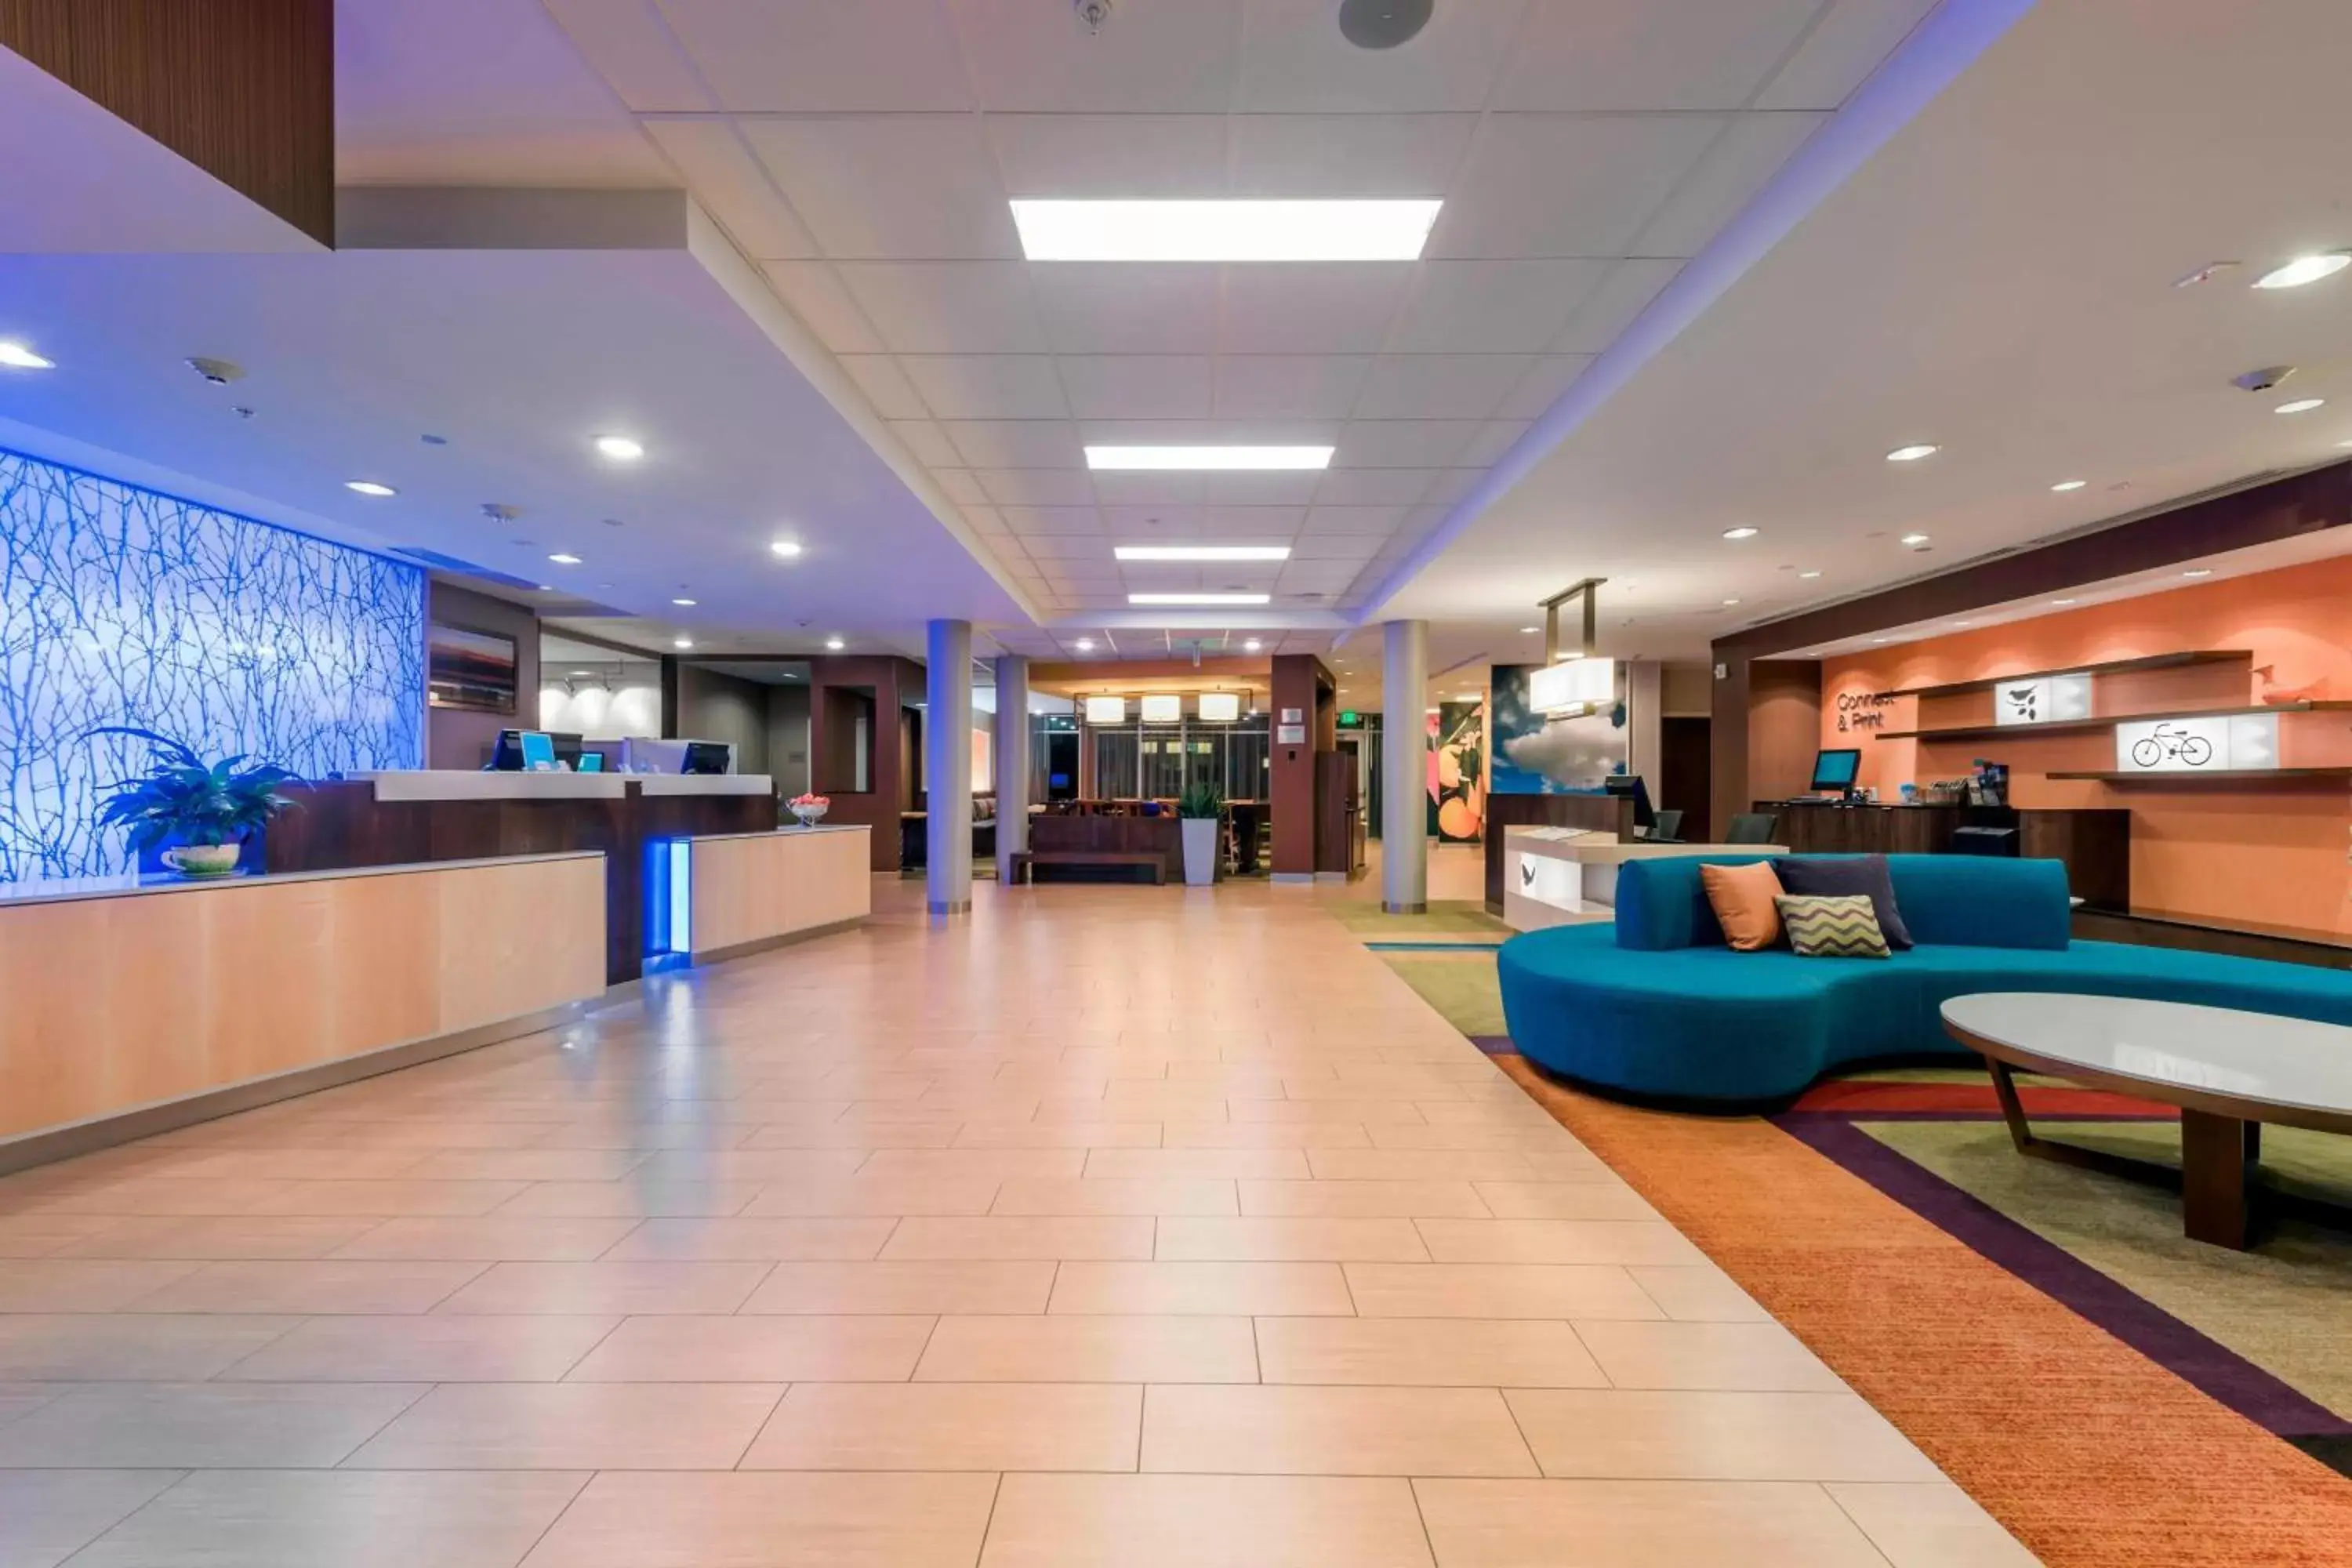 Lobby or reception, Lobby/Reception in Fairfield Inn by Marriott Afton Star Valley